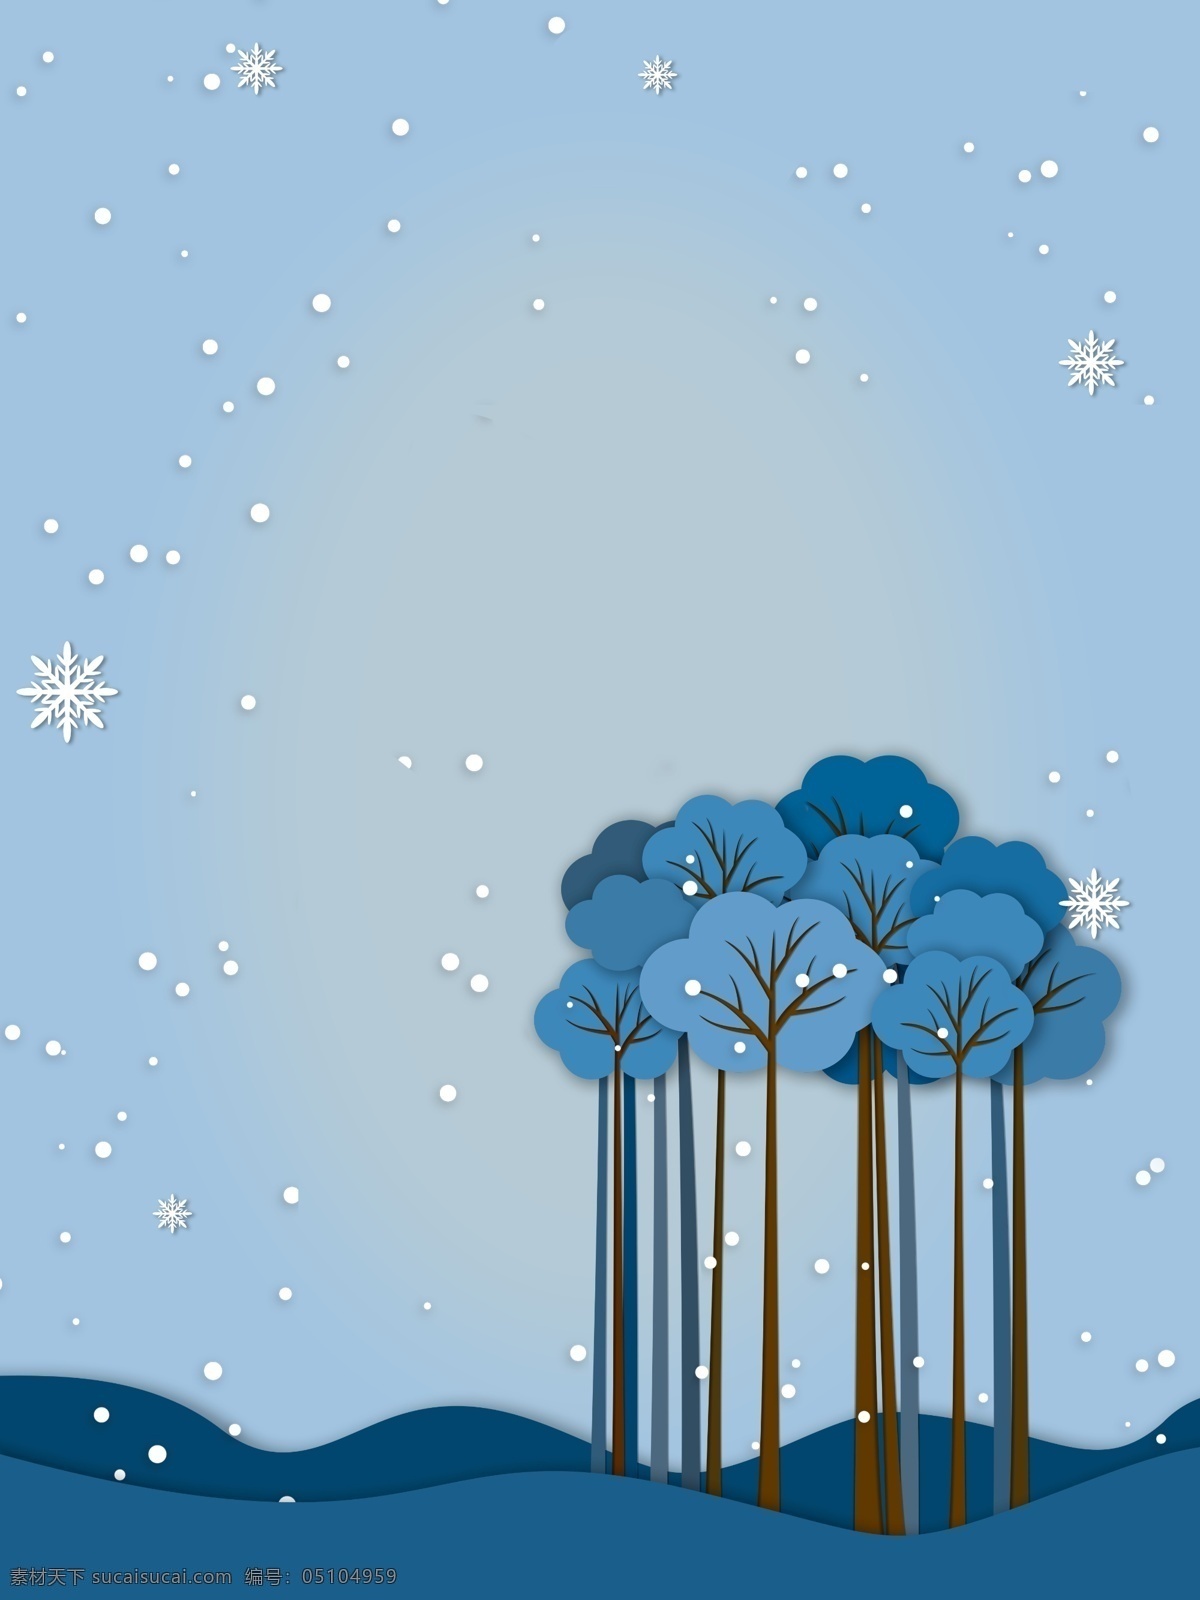 二十四节气 小雪 插画 背景 雪花 蓝色背景 暴雪背景 可爱背景 大雪节气 传统节气 小雪节气